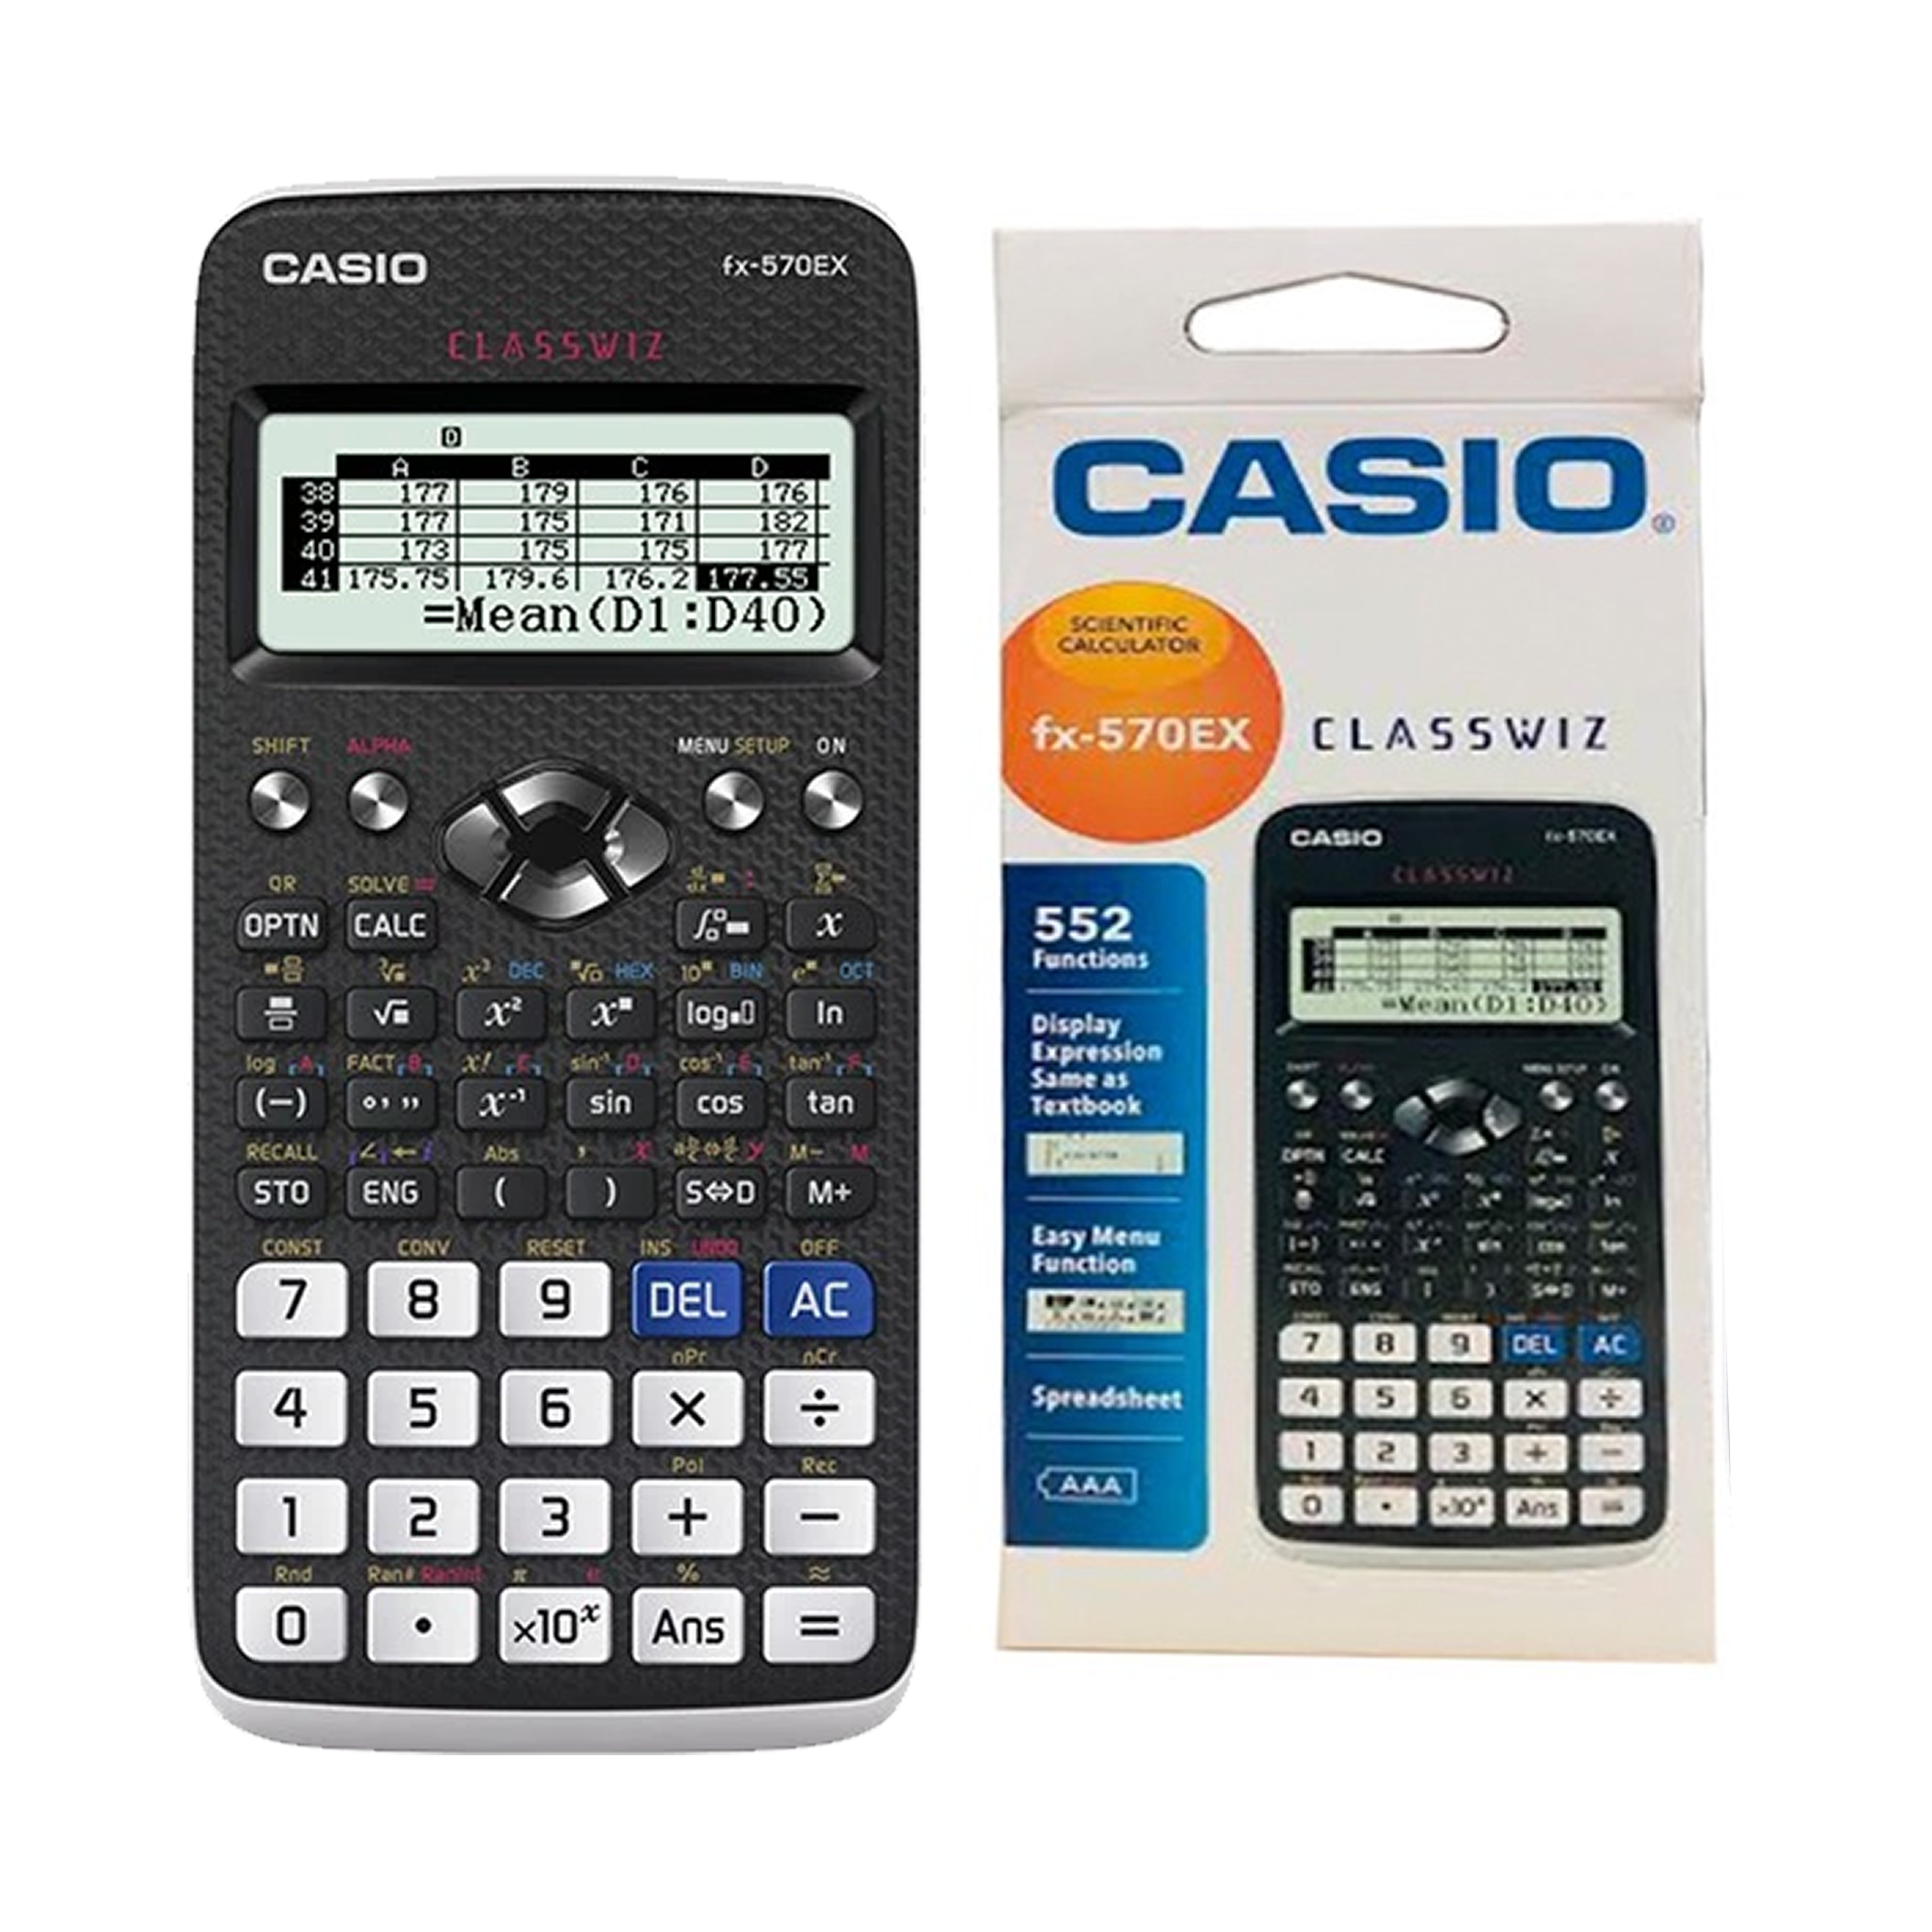 Casio classwiz fx-570ex